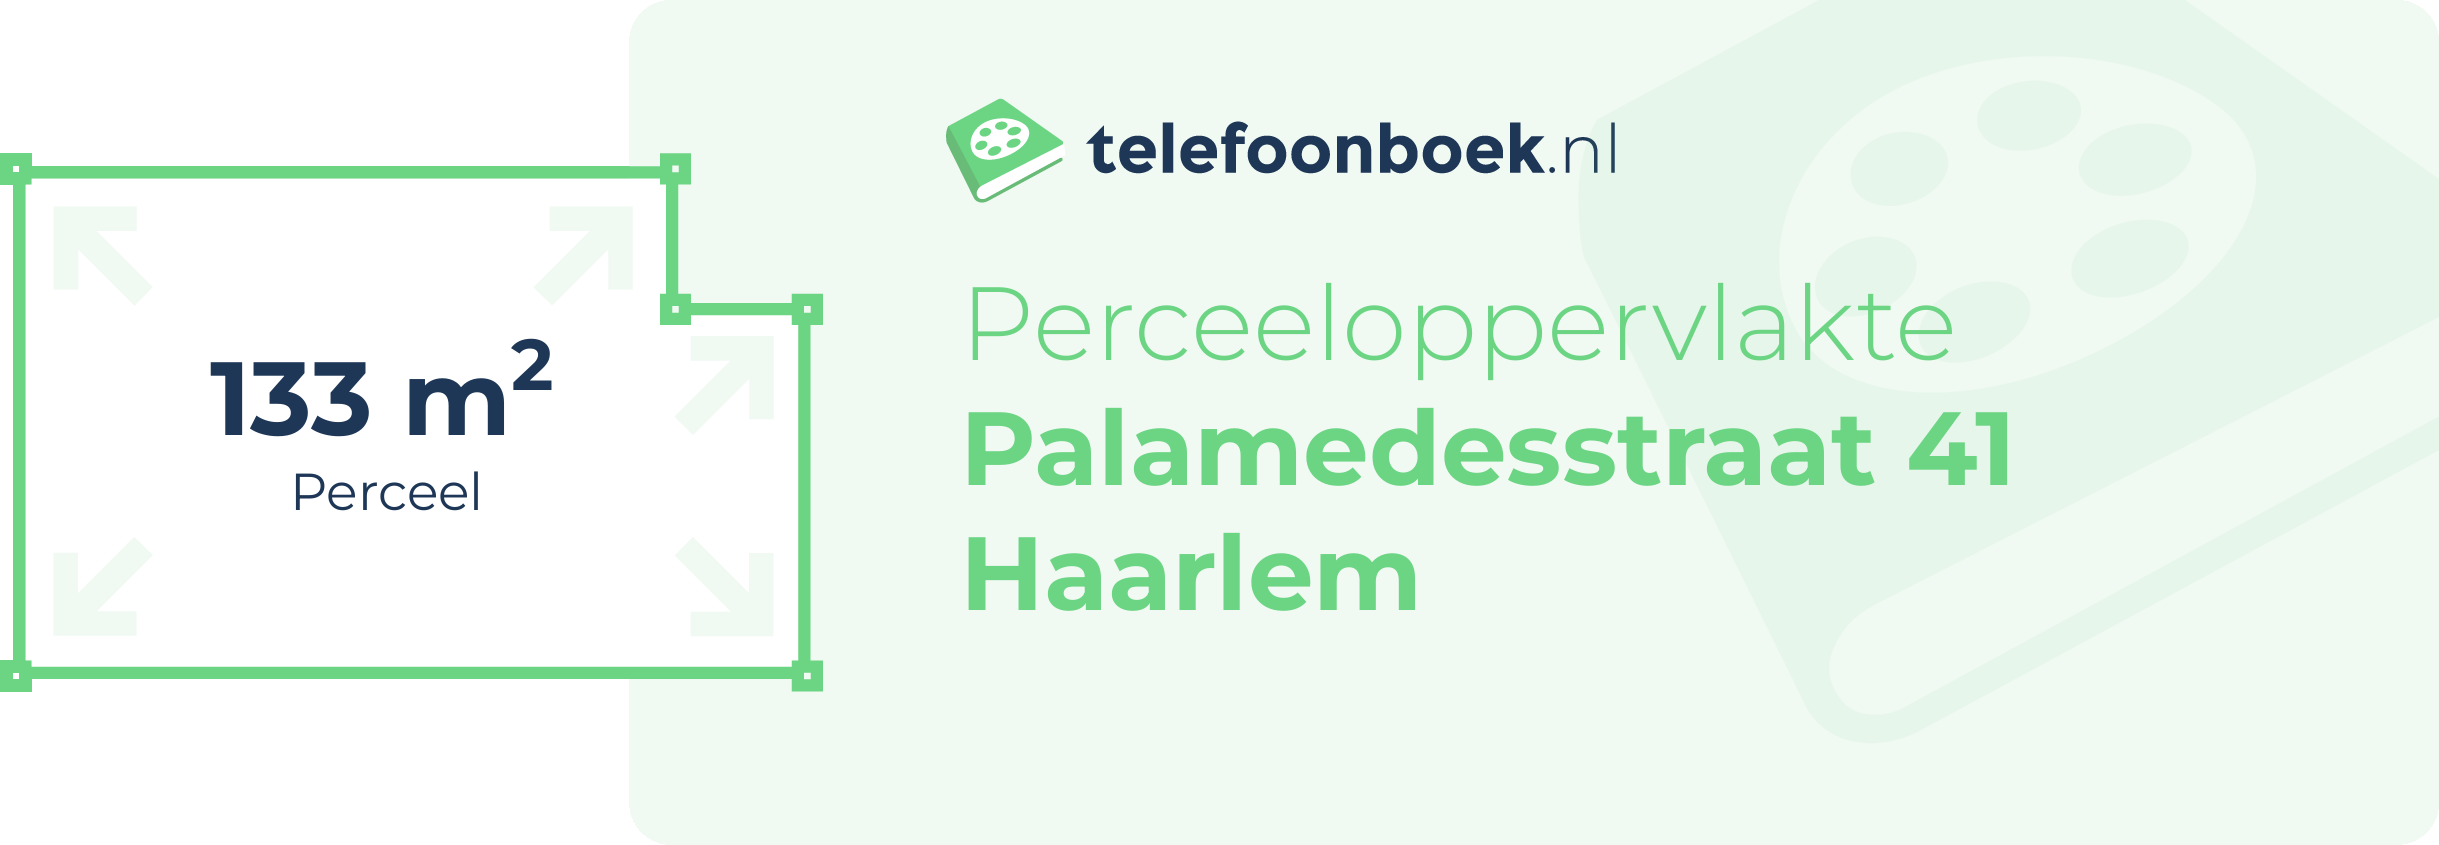 Perceeloppervlakte Palamedesstraat 41 Haarlem